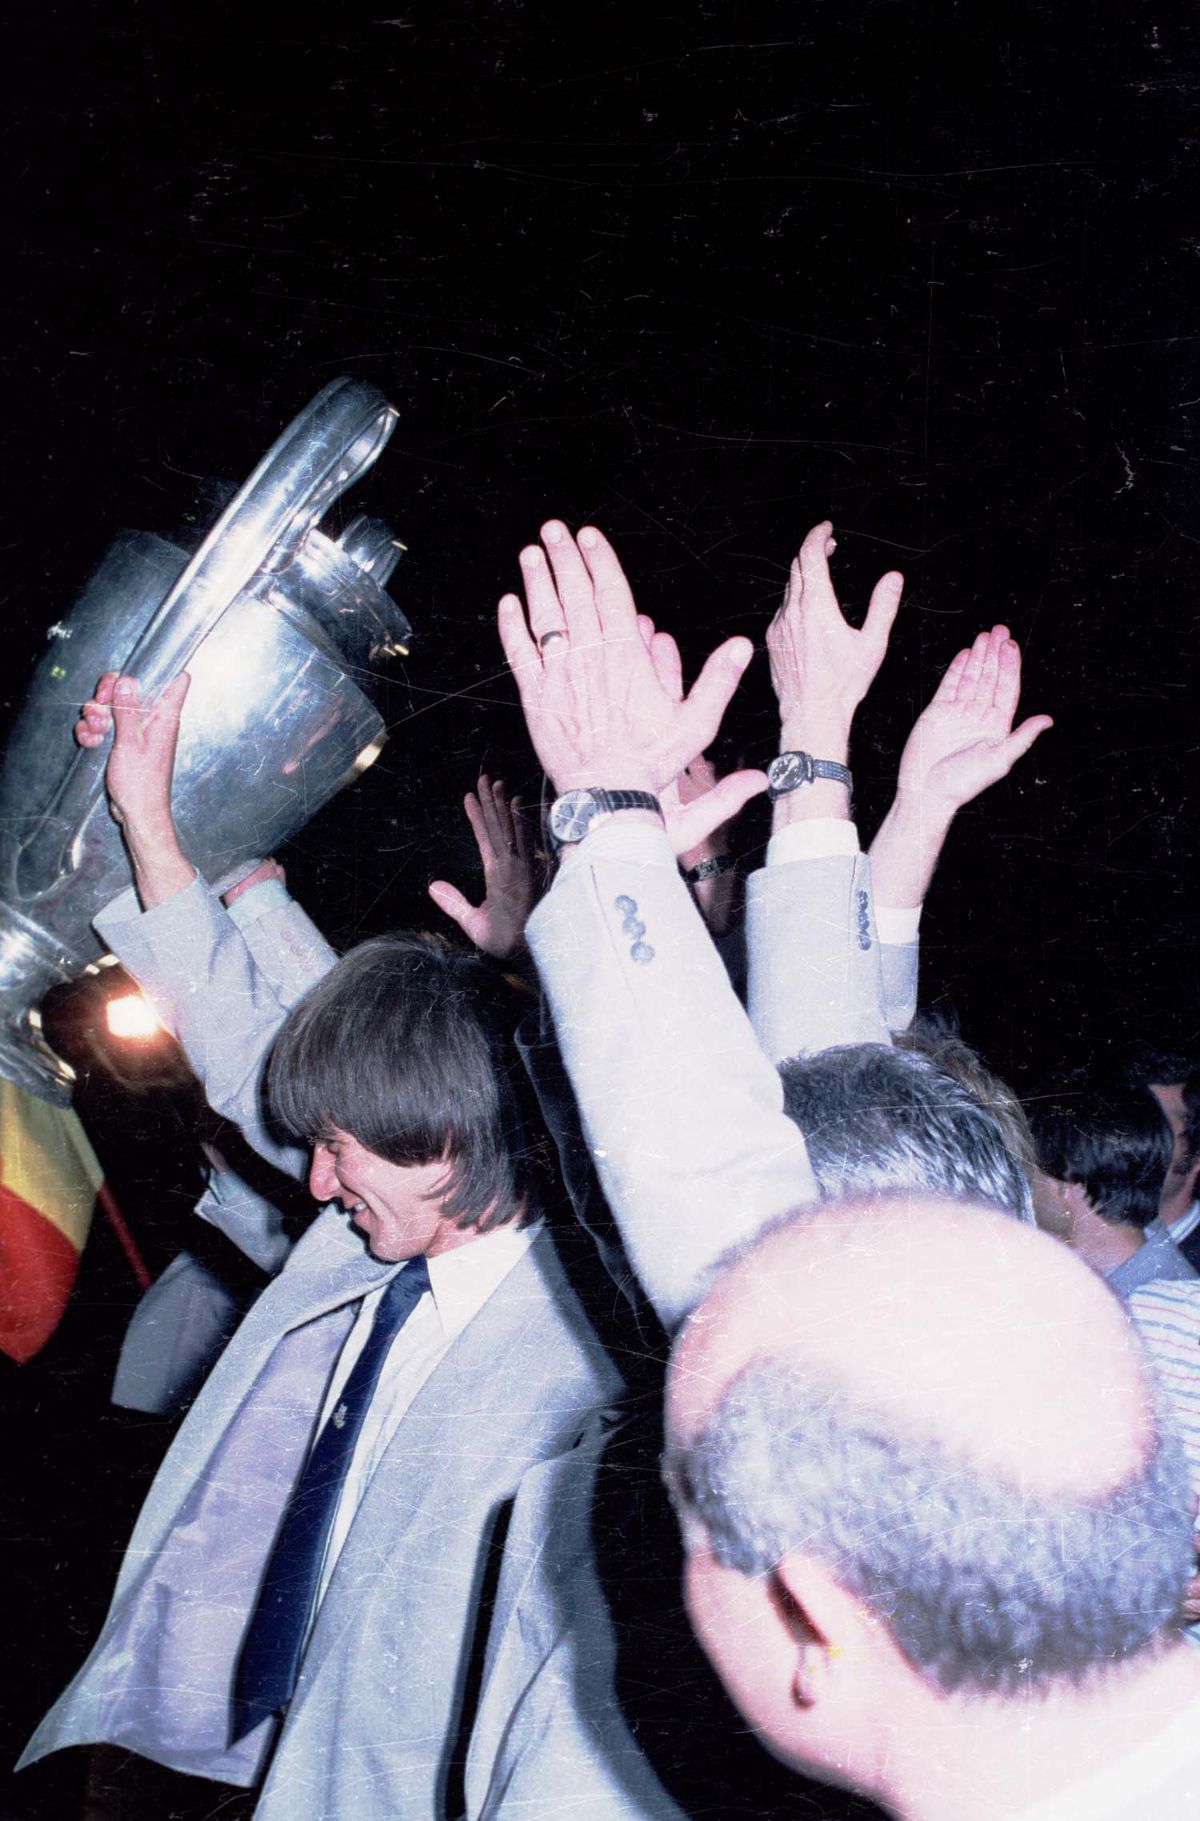 21 de ani de la ultimul meci european pentru Lăcătuș. Ce recorduri fenomenale a stabilit "Fiara"